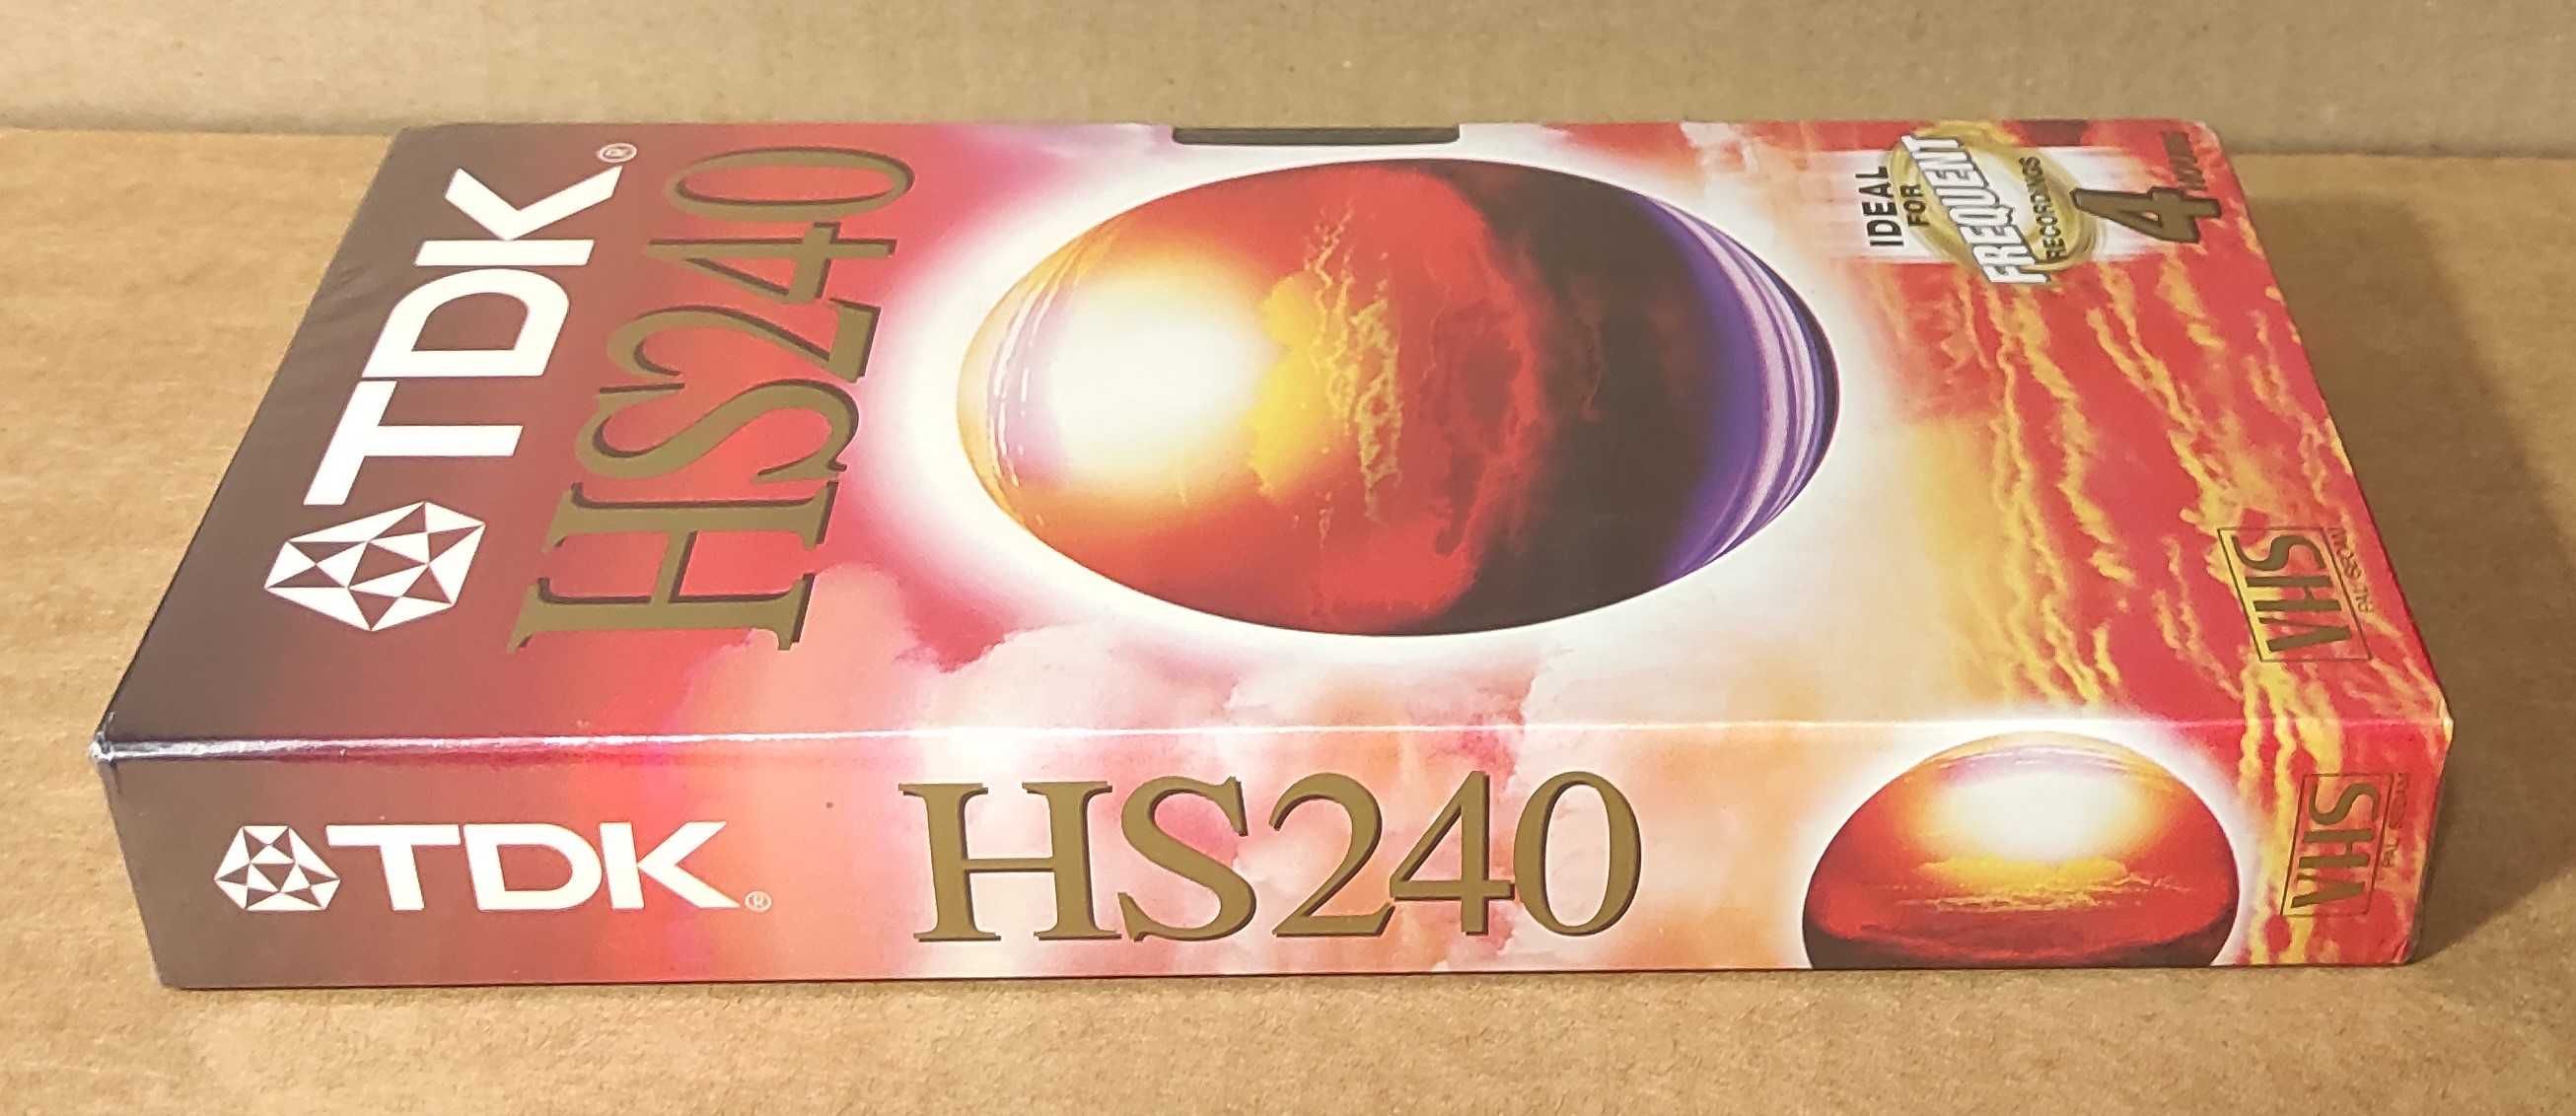 Новая видеокассета TDK HS-240.